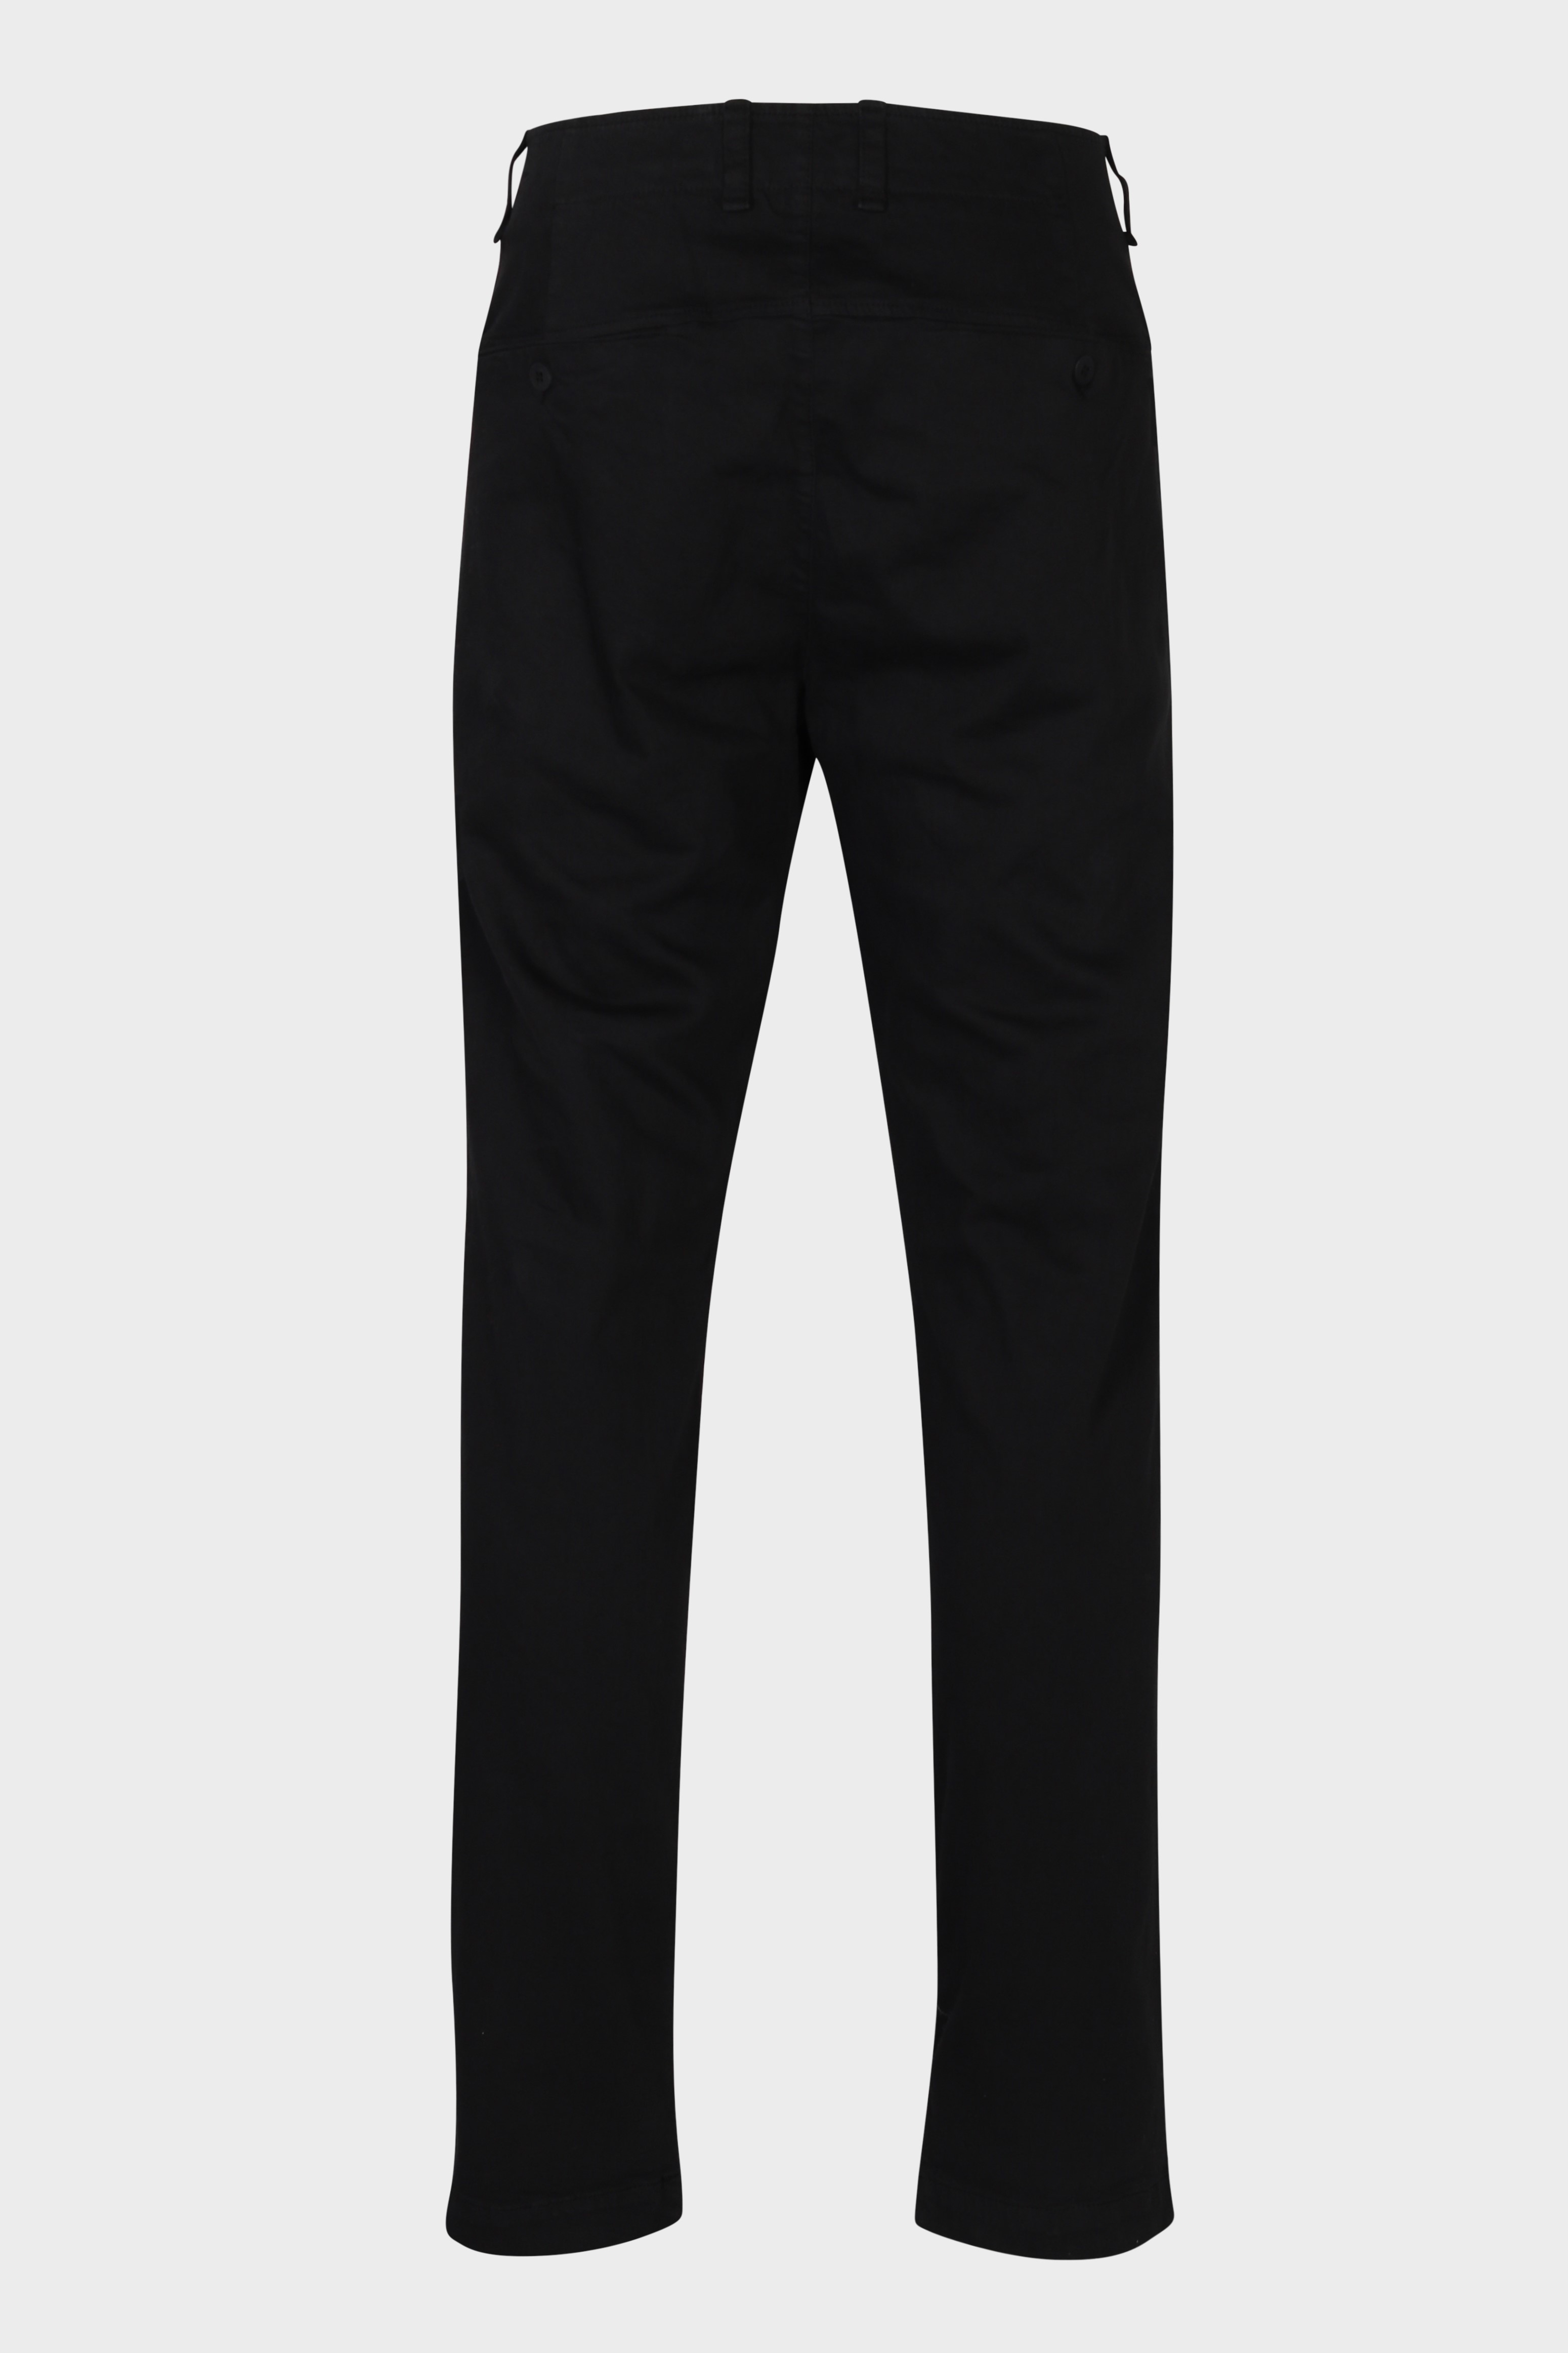 TRANSIT UOMO Cotton Stretch Pant in Black XL